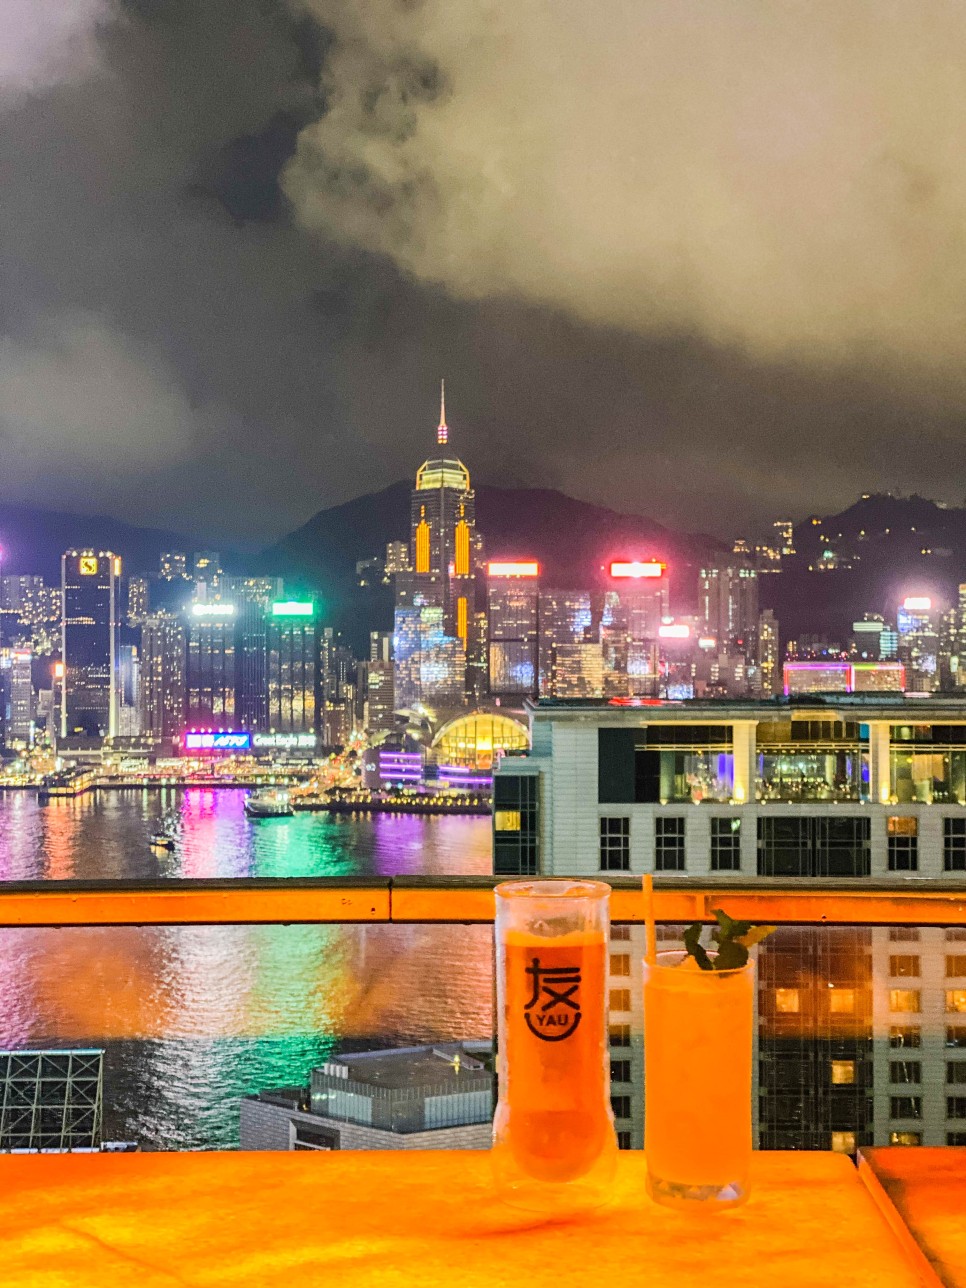 홍콩 자유여행 2박3일 홍콩 항공권 경비 20만원대